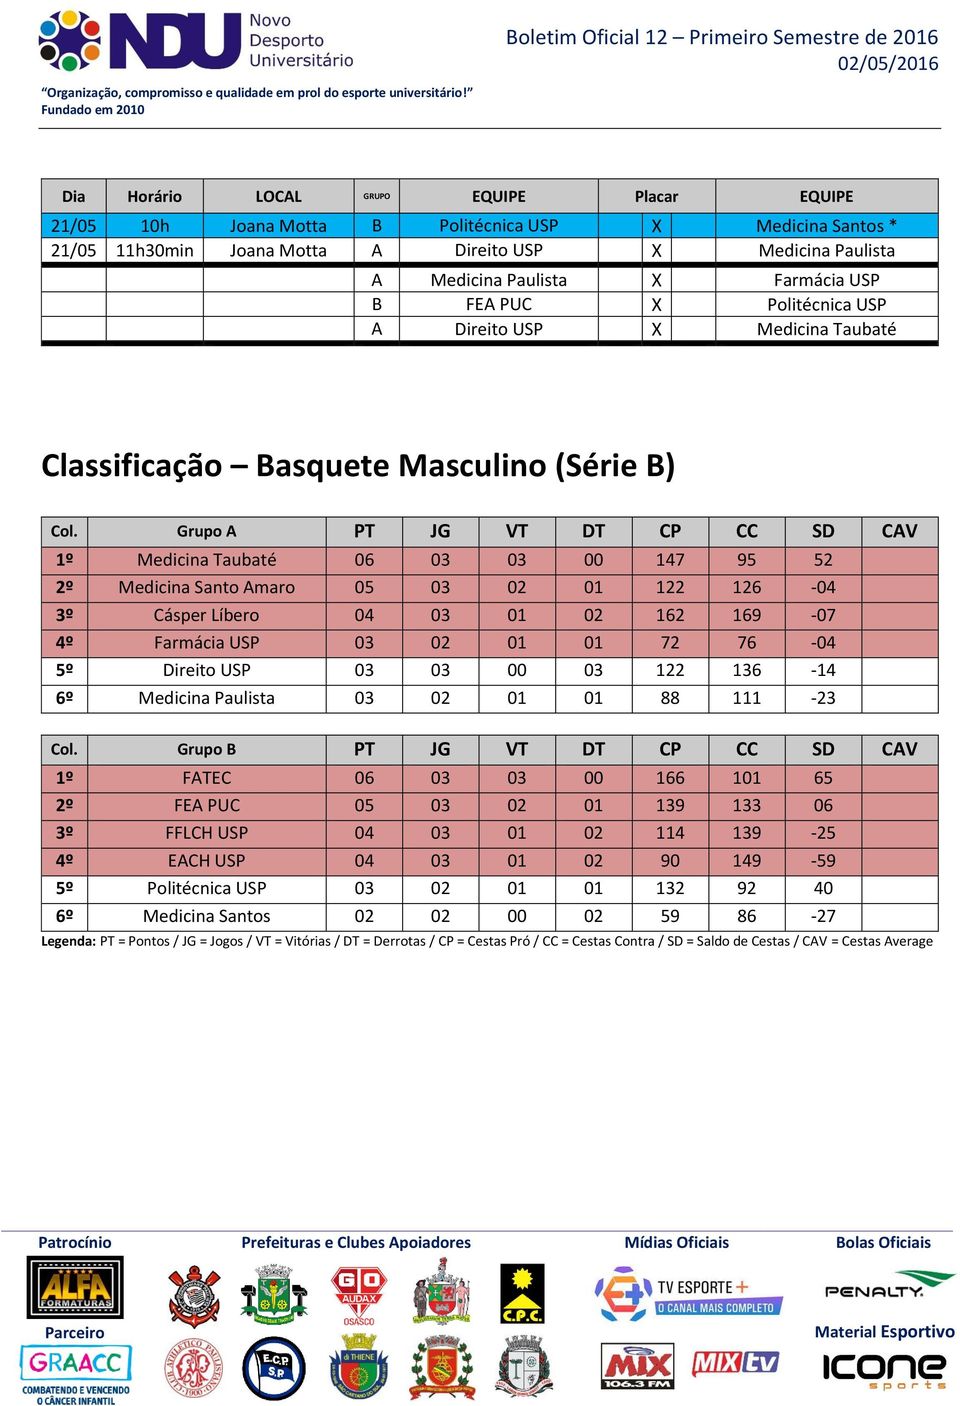 Taubaté Classificação Basquete Masculino (Série B) Col.